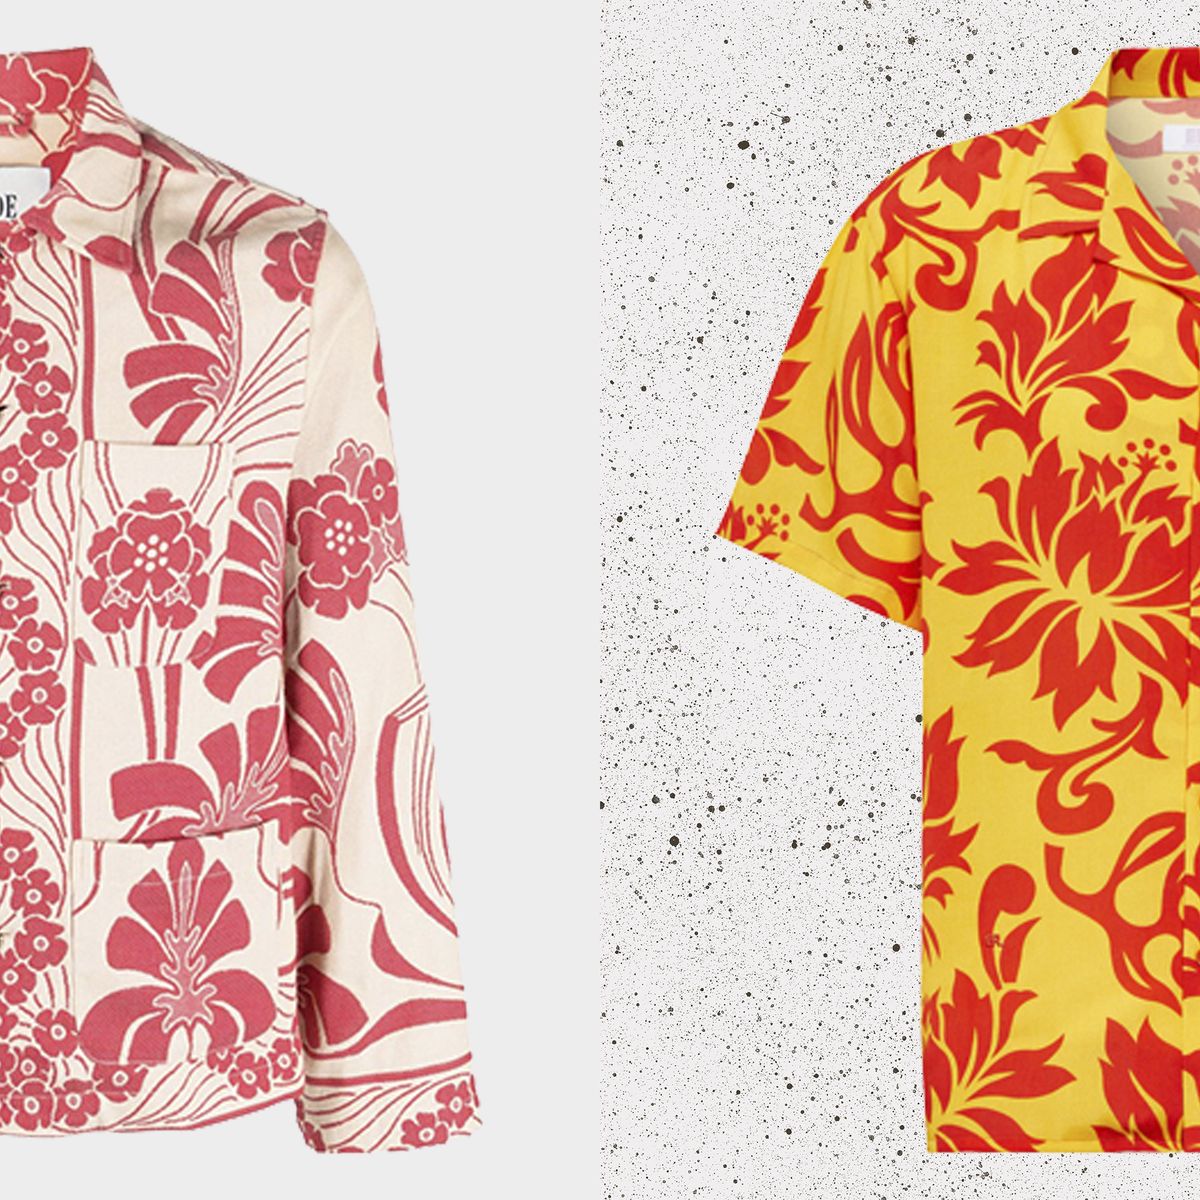 Funny Hawaiian Shirt - Hot Sale 2023